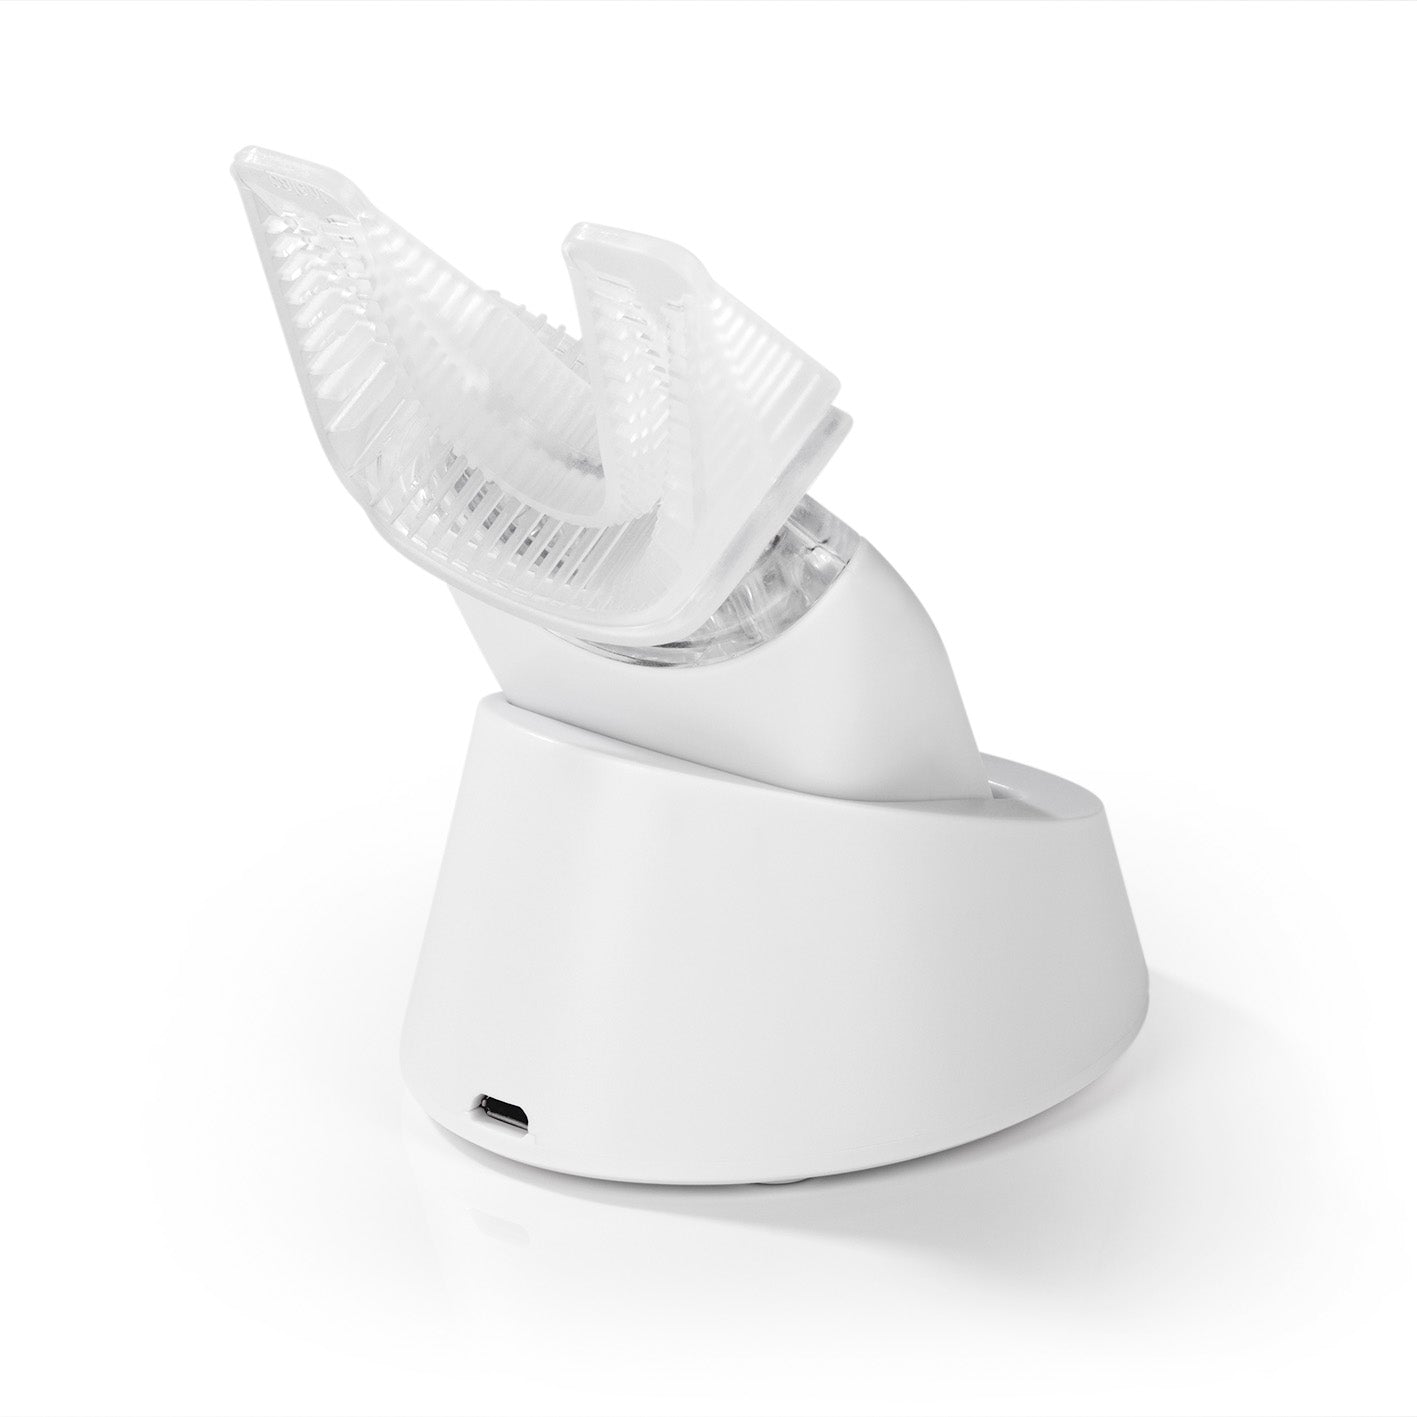 Schall-Zahnbürste - 360°-Borsten - Mit Vibrationsfunktion - weiß